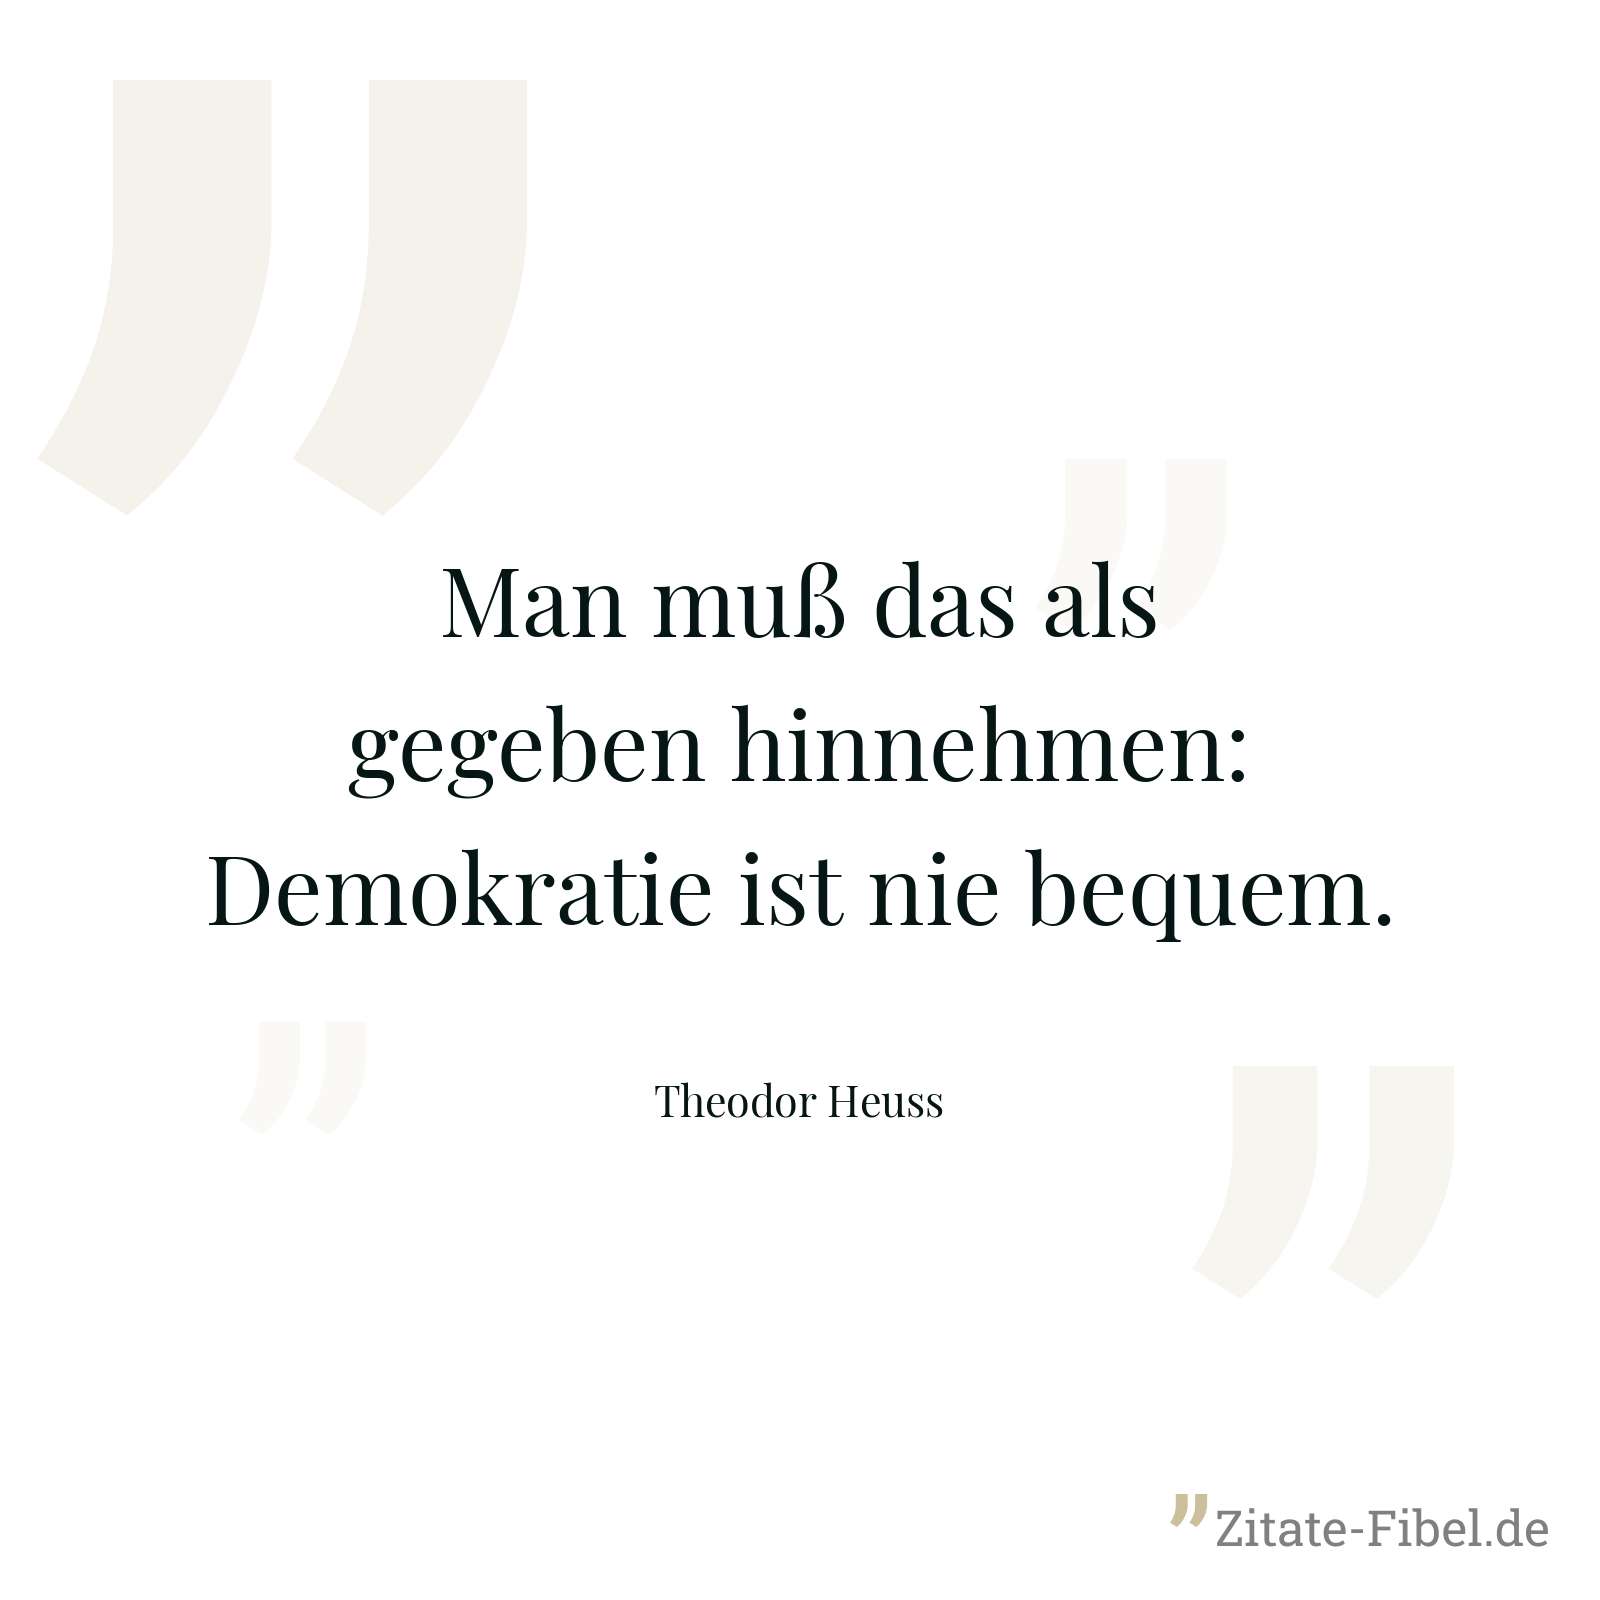 Man muß das als gegeben hinnehmen: Demokratie ist nie bequem. - Theodor Heuss